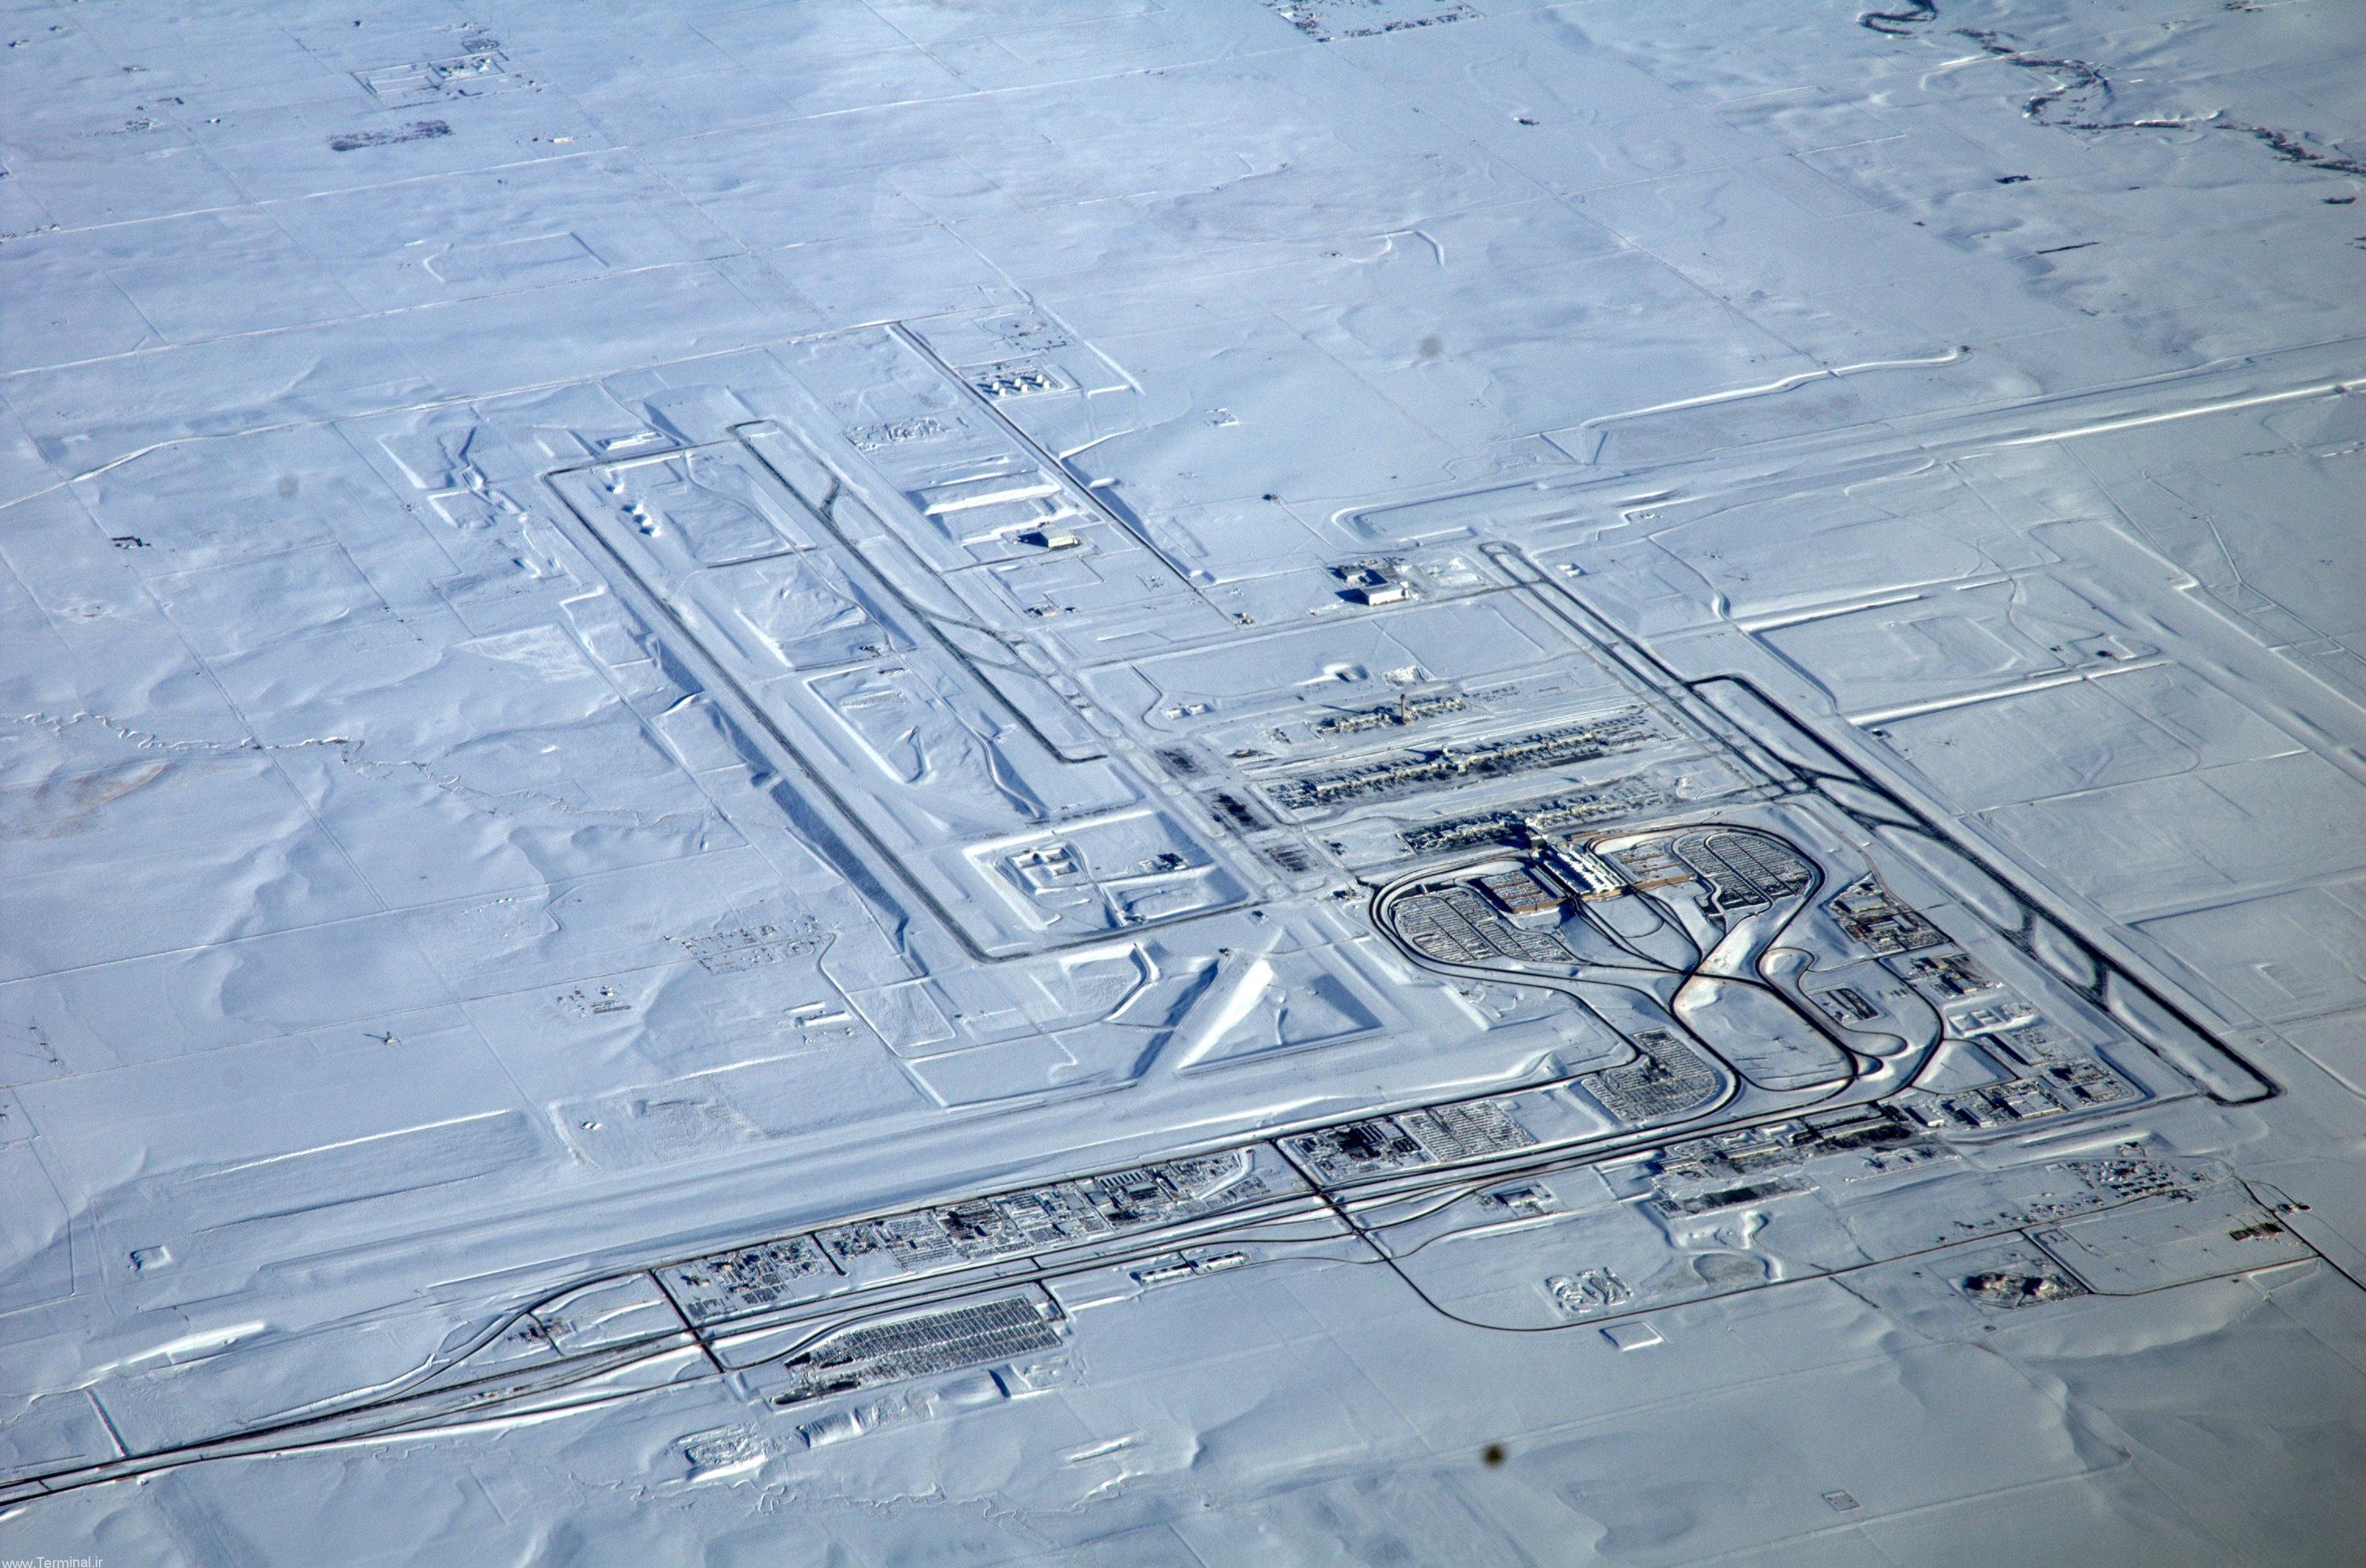 http://terminal.ir/wp-content/uploads/2016/02/Denver_International_Airport,_snow.jpg